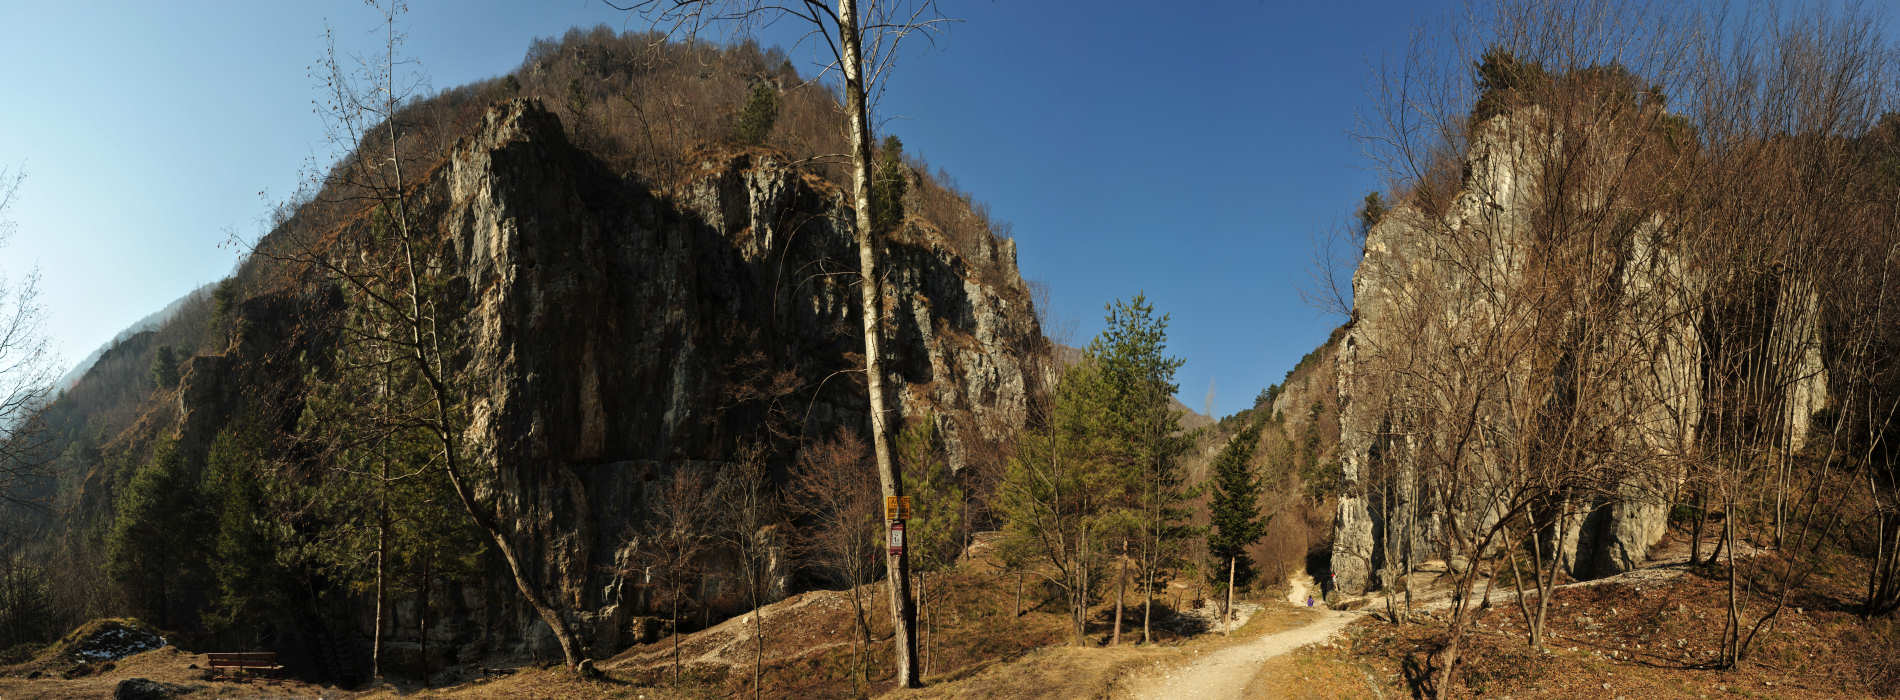 palestra di roccia falesie di Valle Santa Felicita - fotografia panoramica